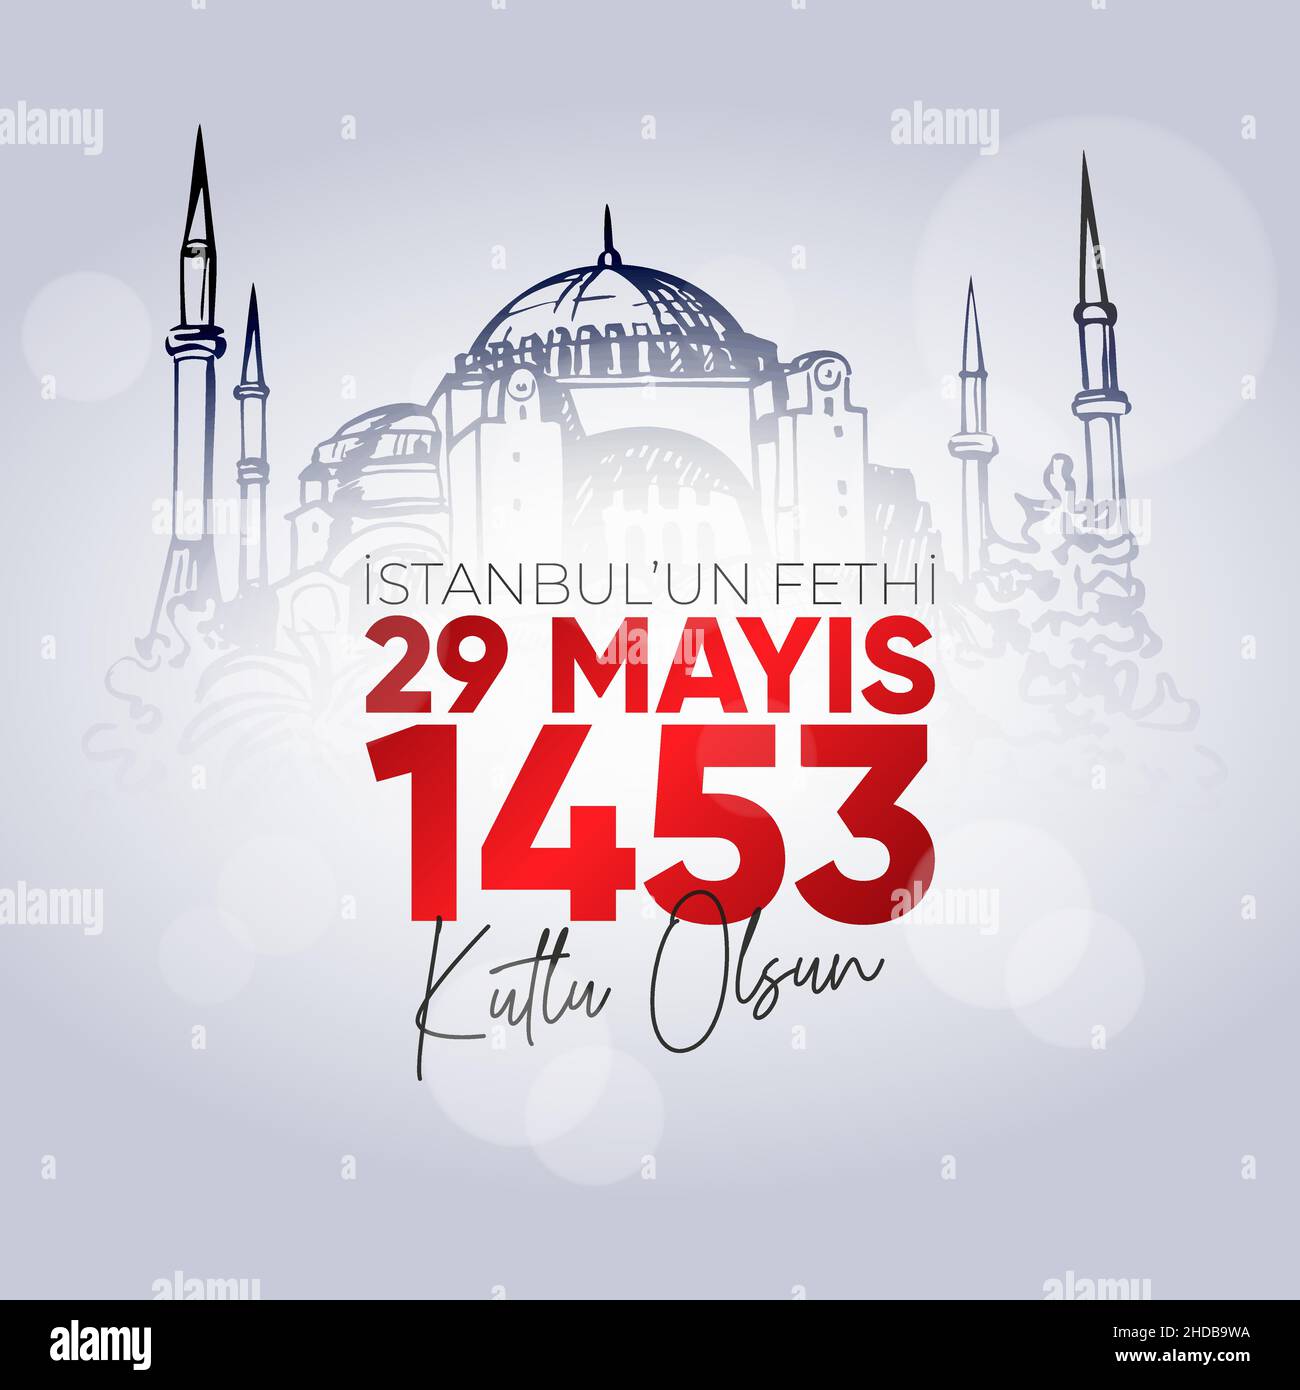 29 Mays 1453 Istanbul'un Fethi Kutlu Olsun. Traduzione: Maggio 29 felice conquista di Istanbul. Illustrazione Vettoriale